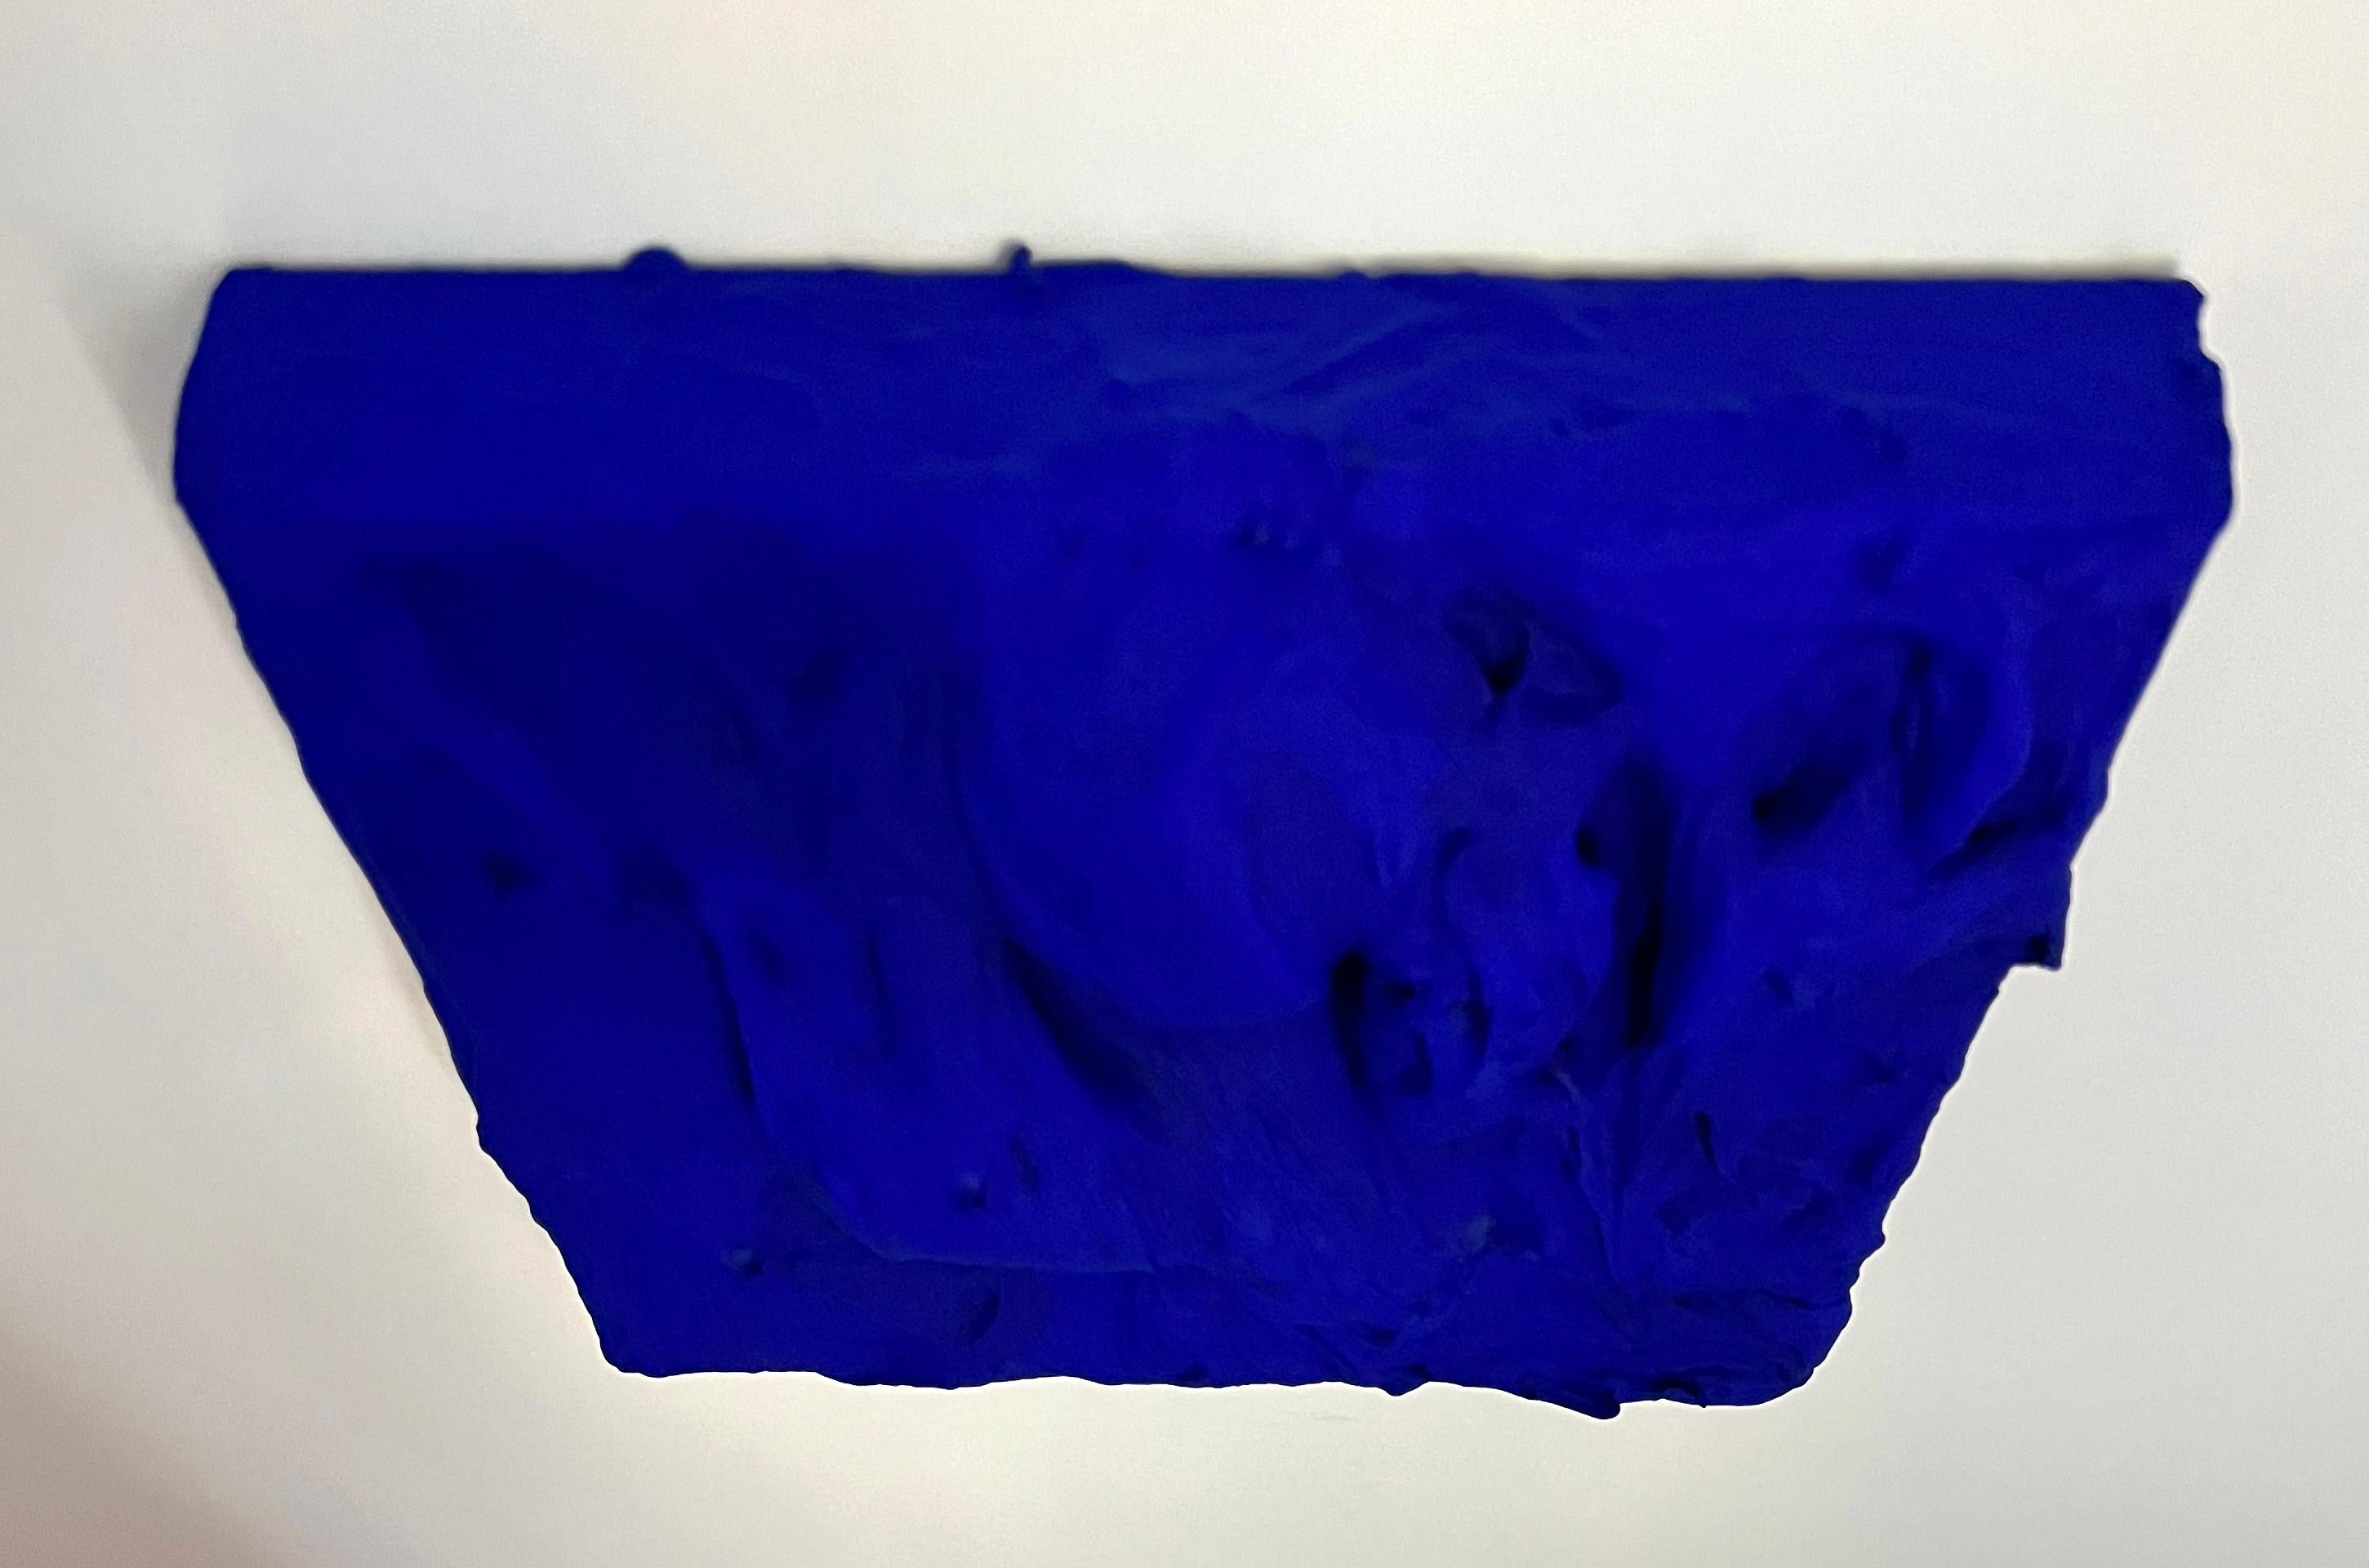 Ultra Blue Excess (thick impasto painting monochrome Pop-Art quadratisches Design) – Painting von Chloe Hedden